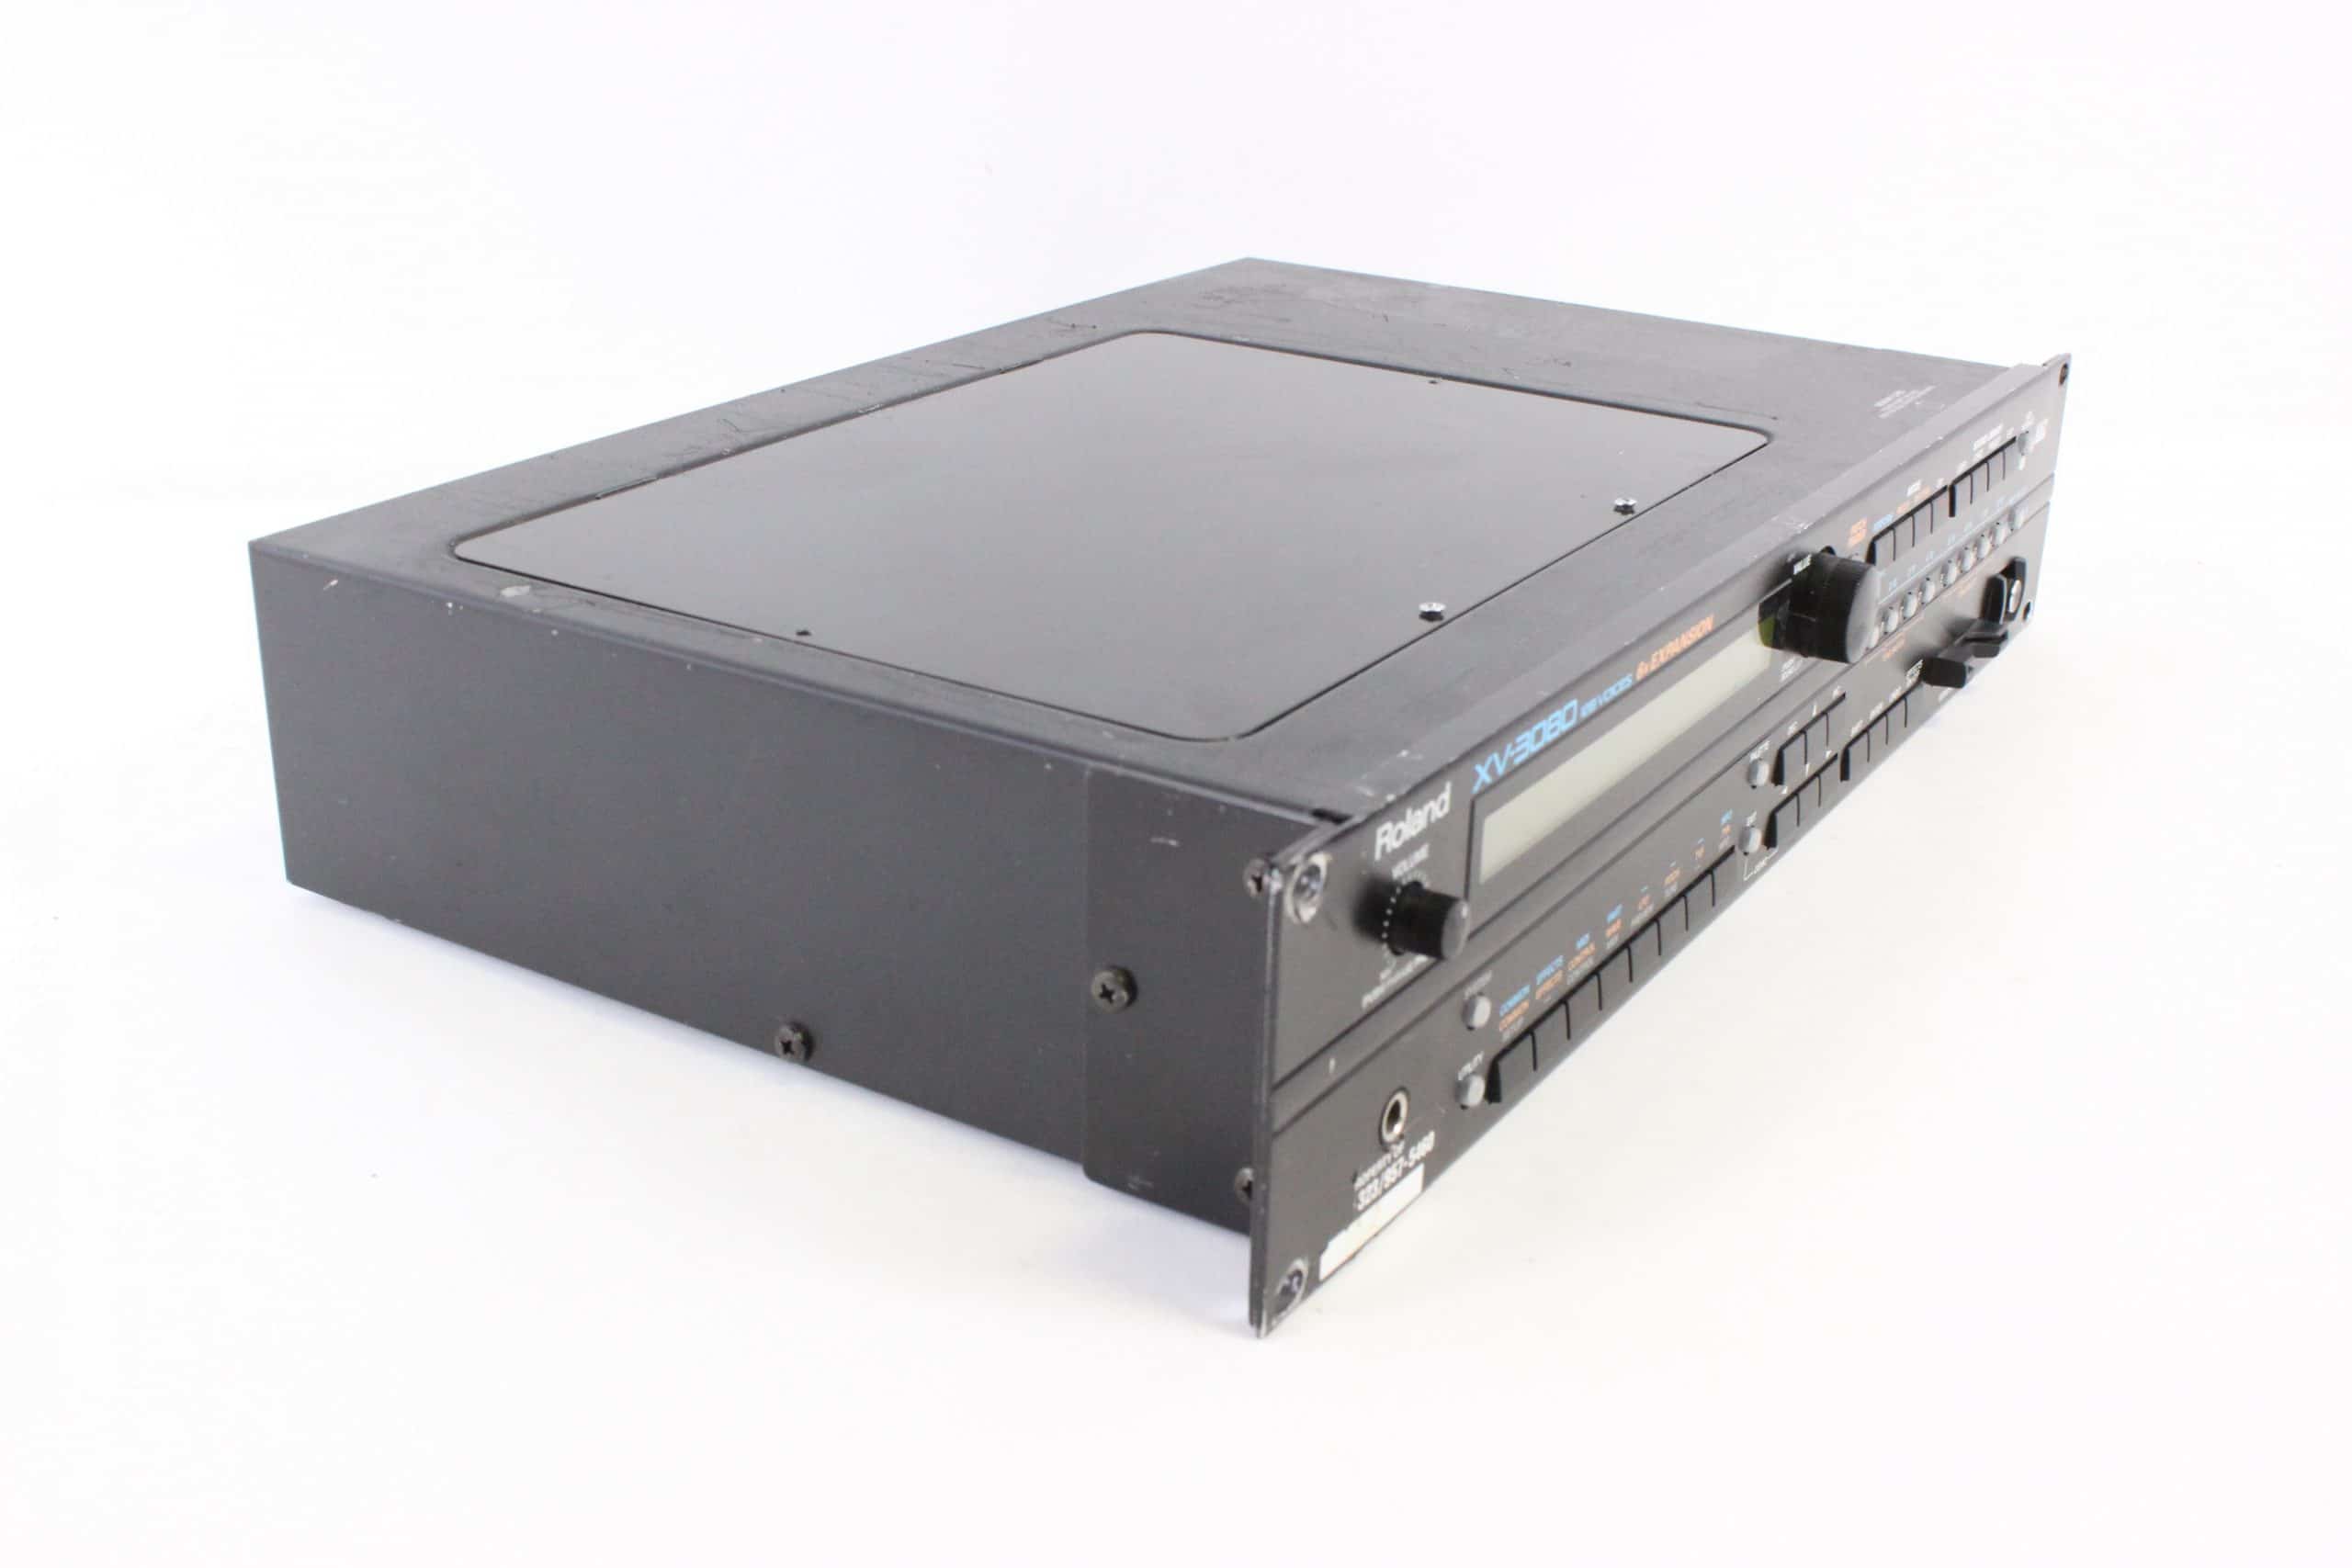 Roland XV-3080 128-Voice Synth Module · AV Gear